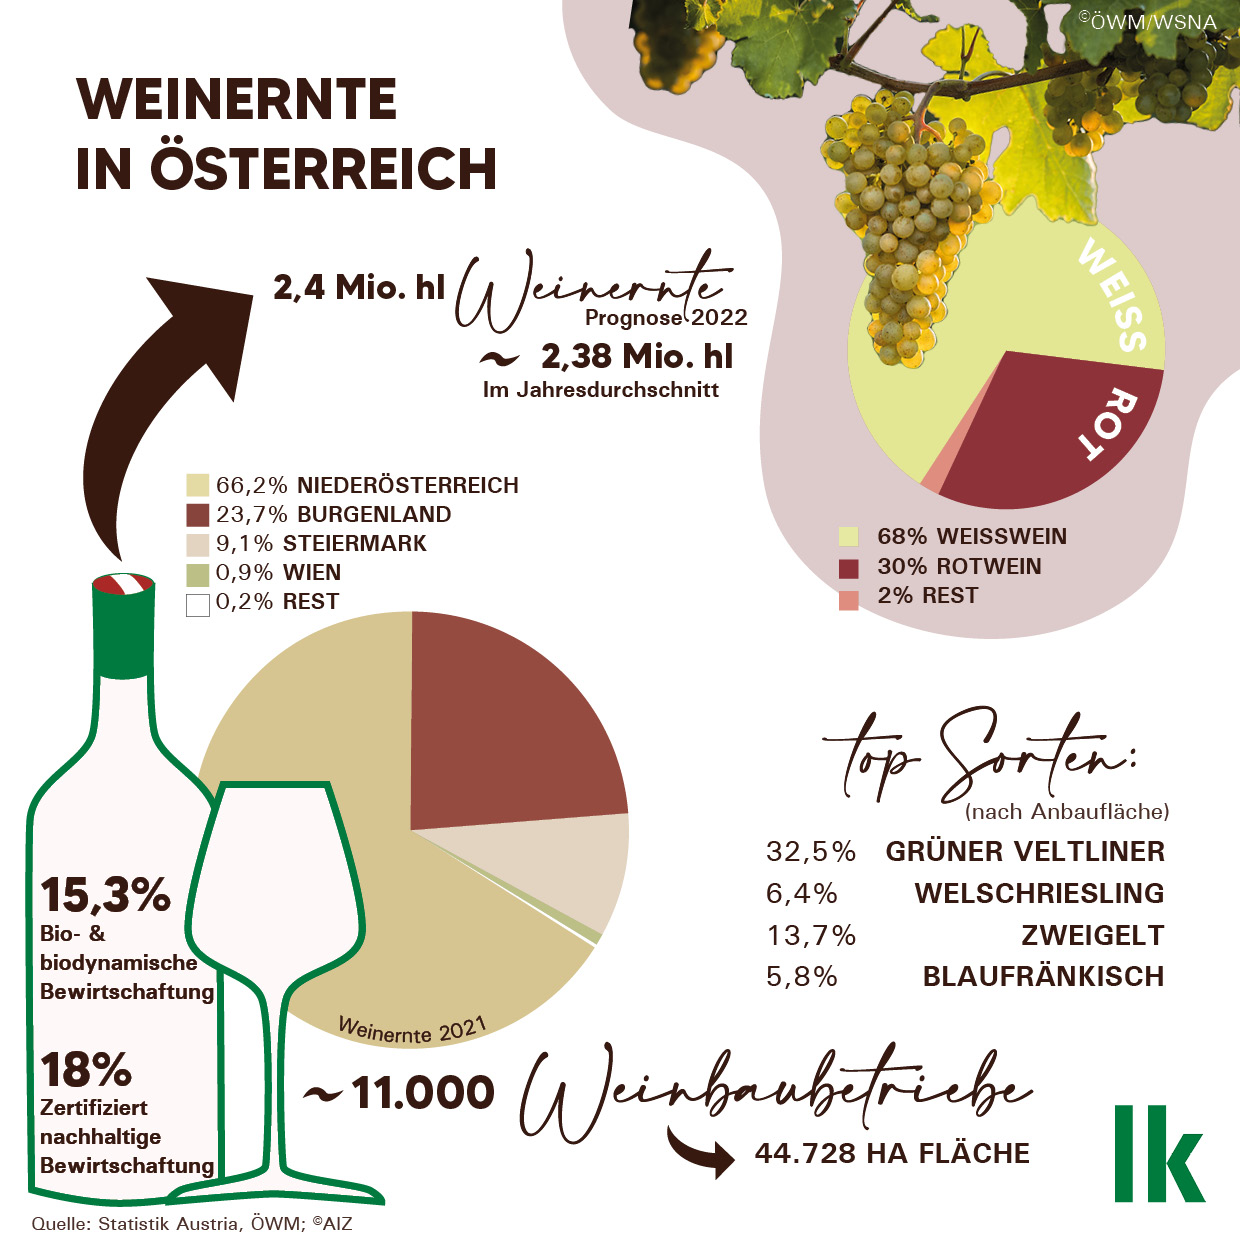 Grafik zur Weinernte in Österreich 2022